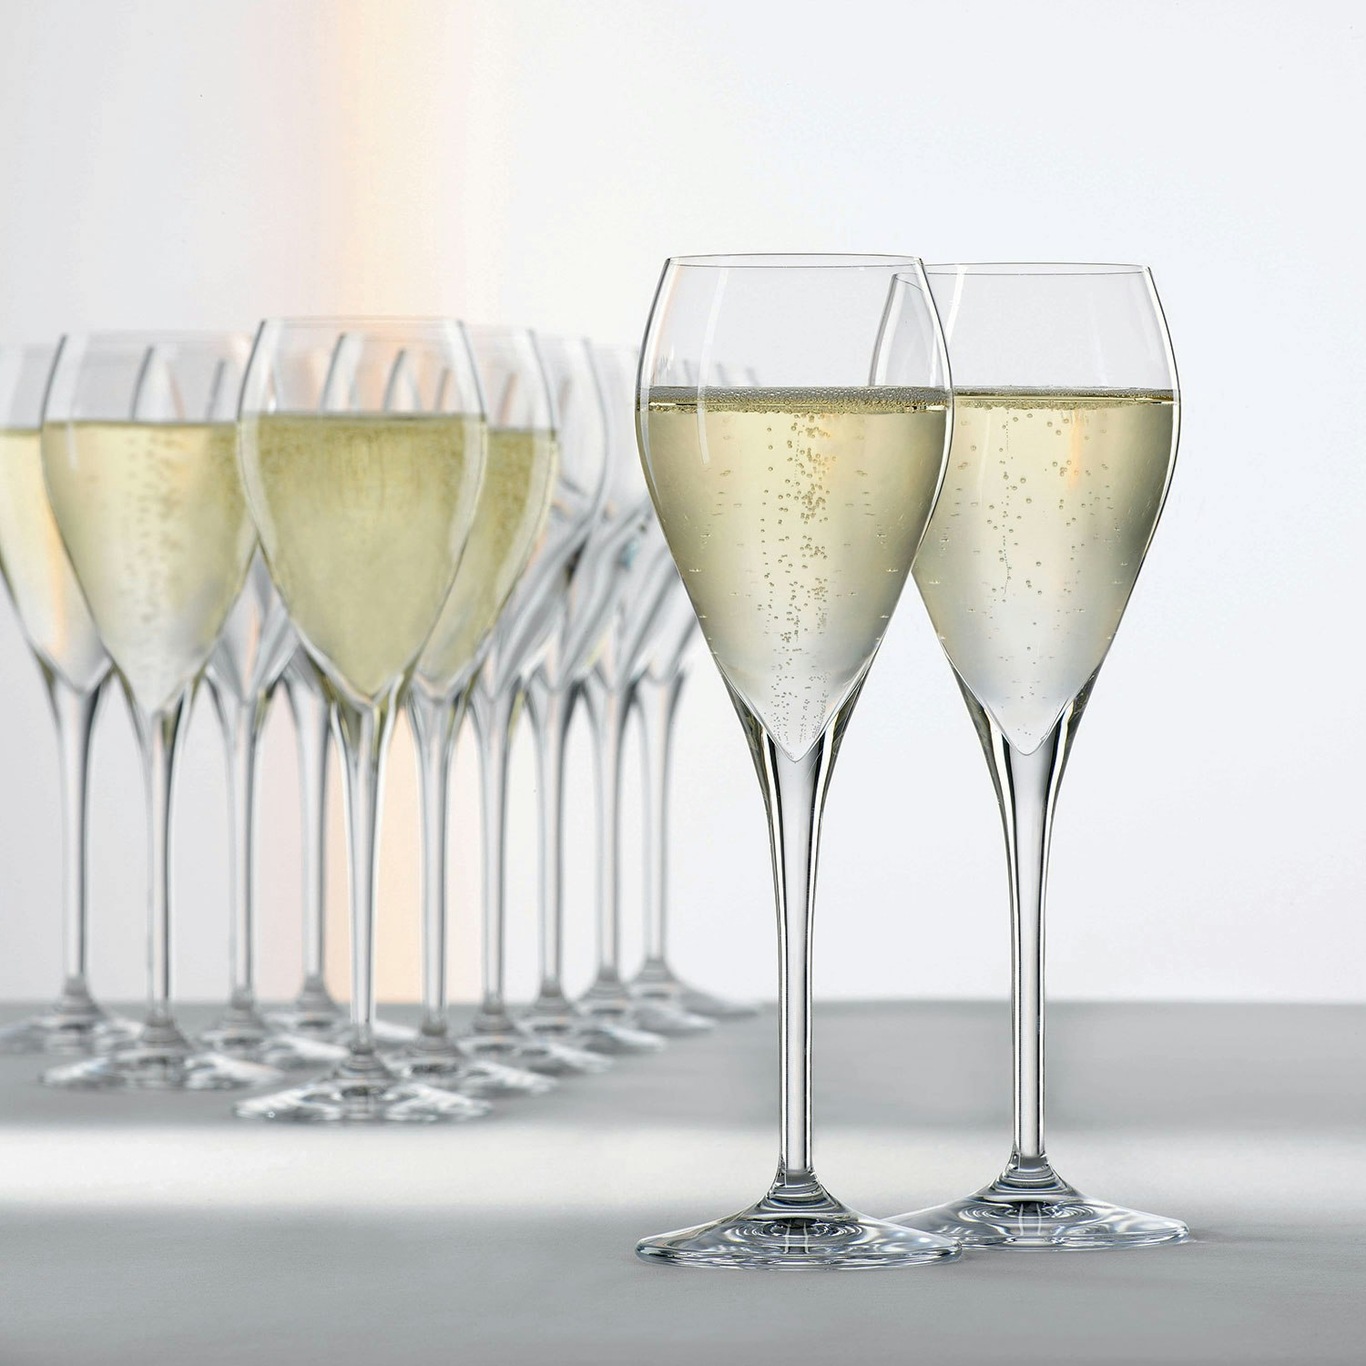 https://royaldesign.com/image/2/spiegelau-party-champagne-glass-16-cl-6-pcs-1?w=800&quality=80